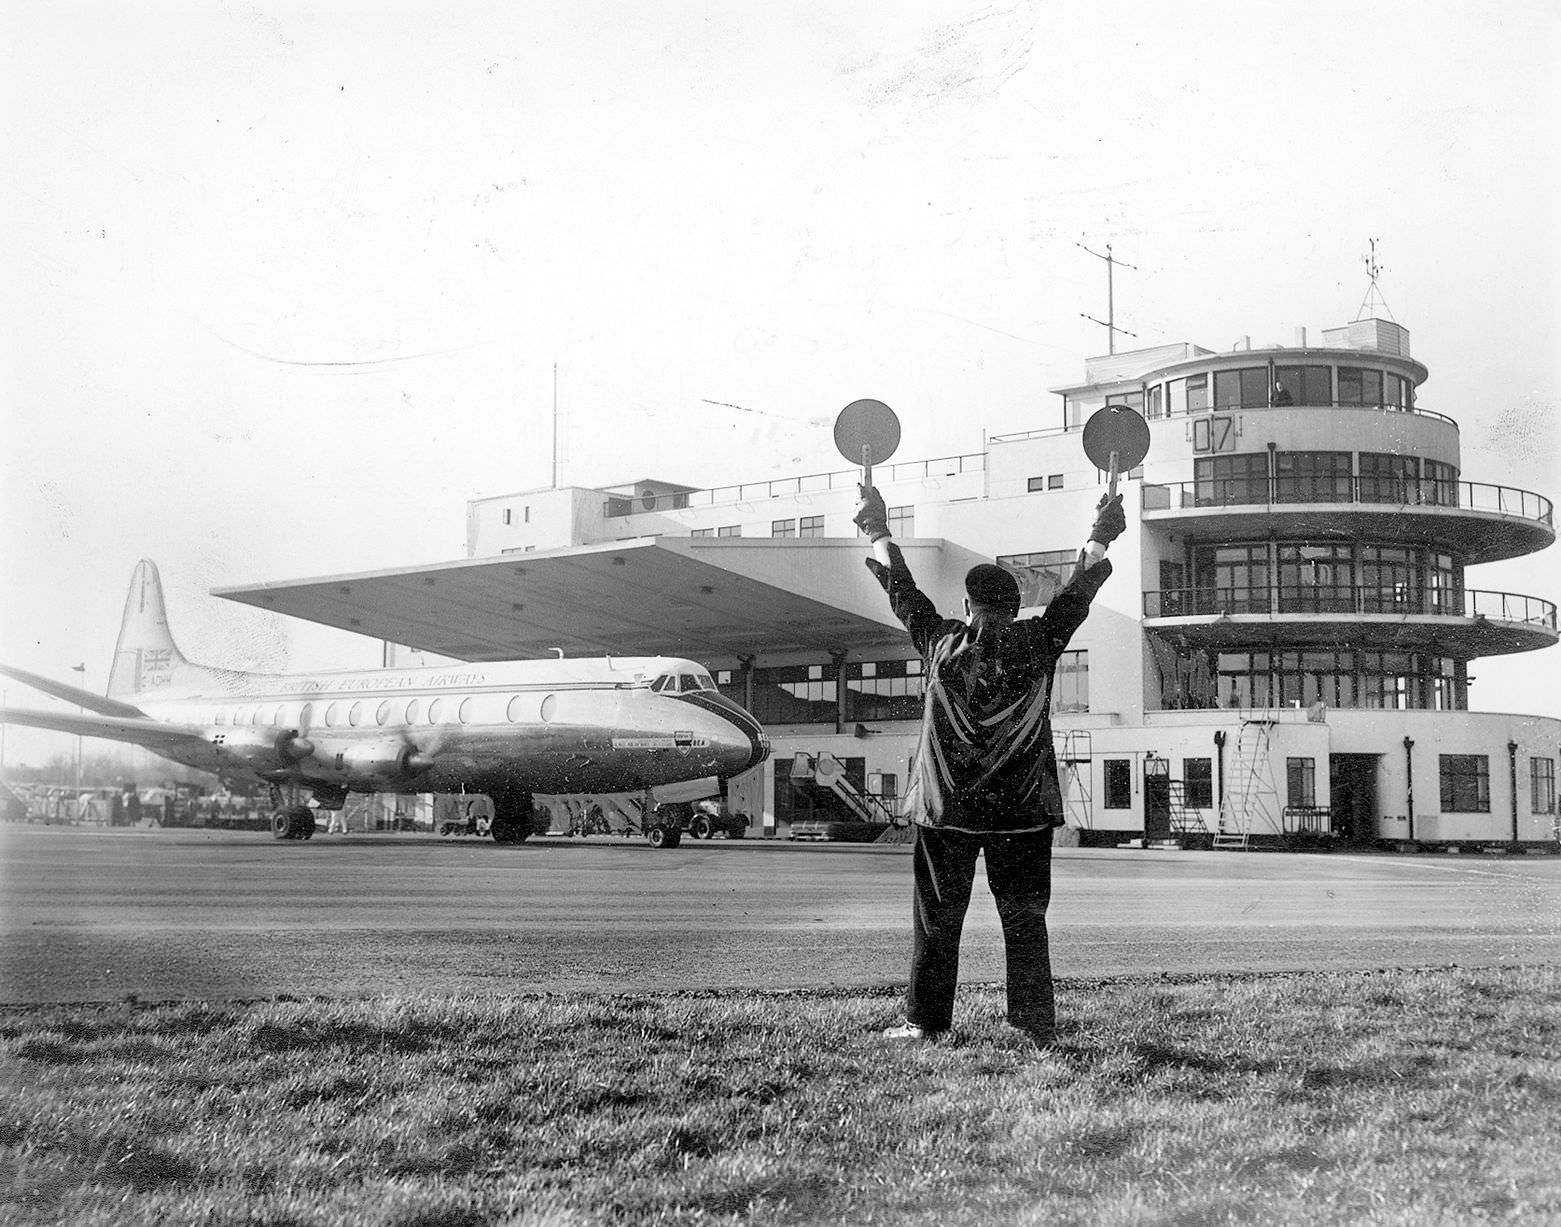 Birmingham Airport in 1960.